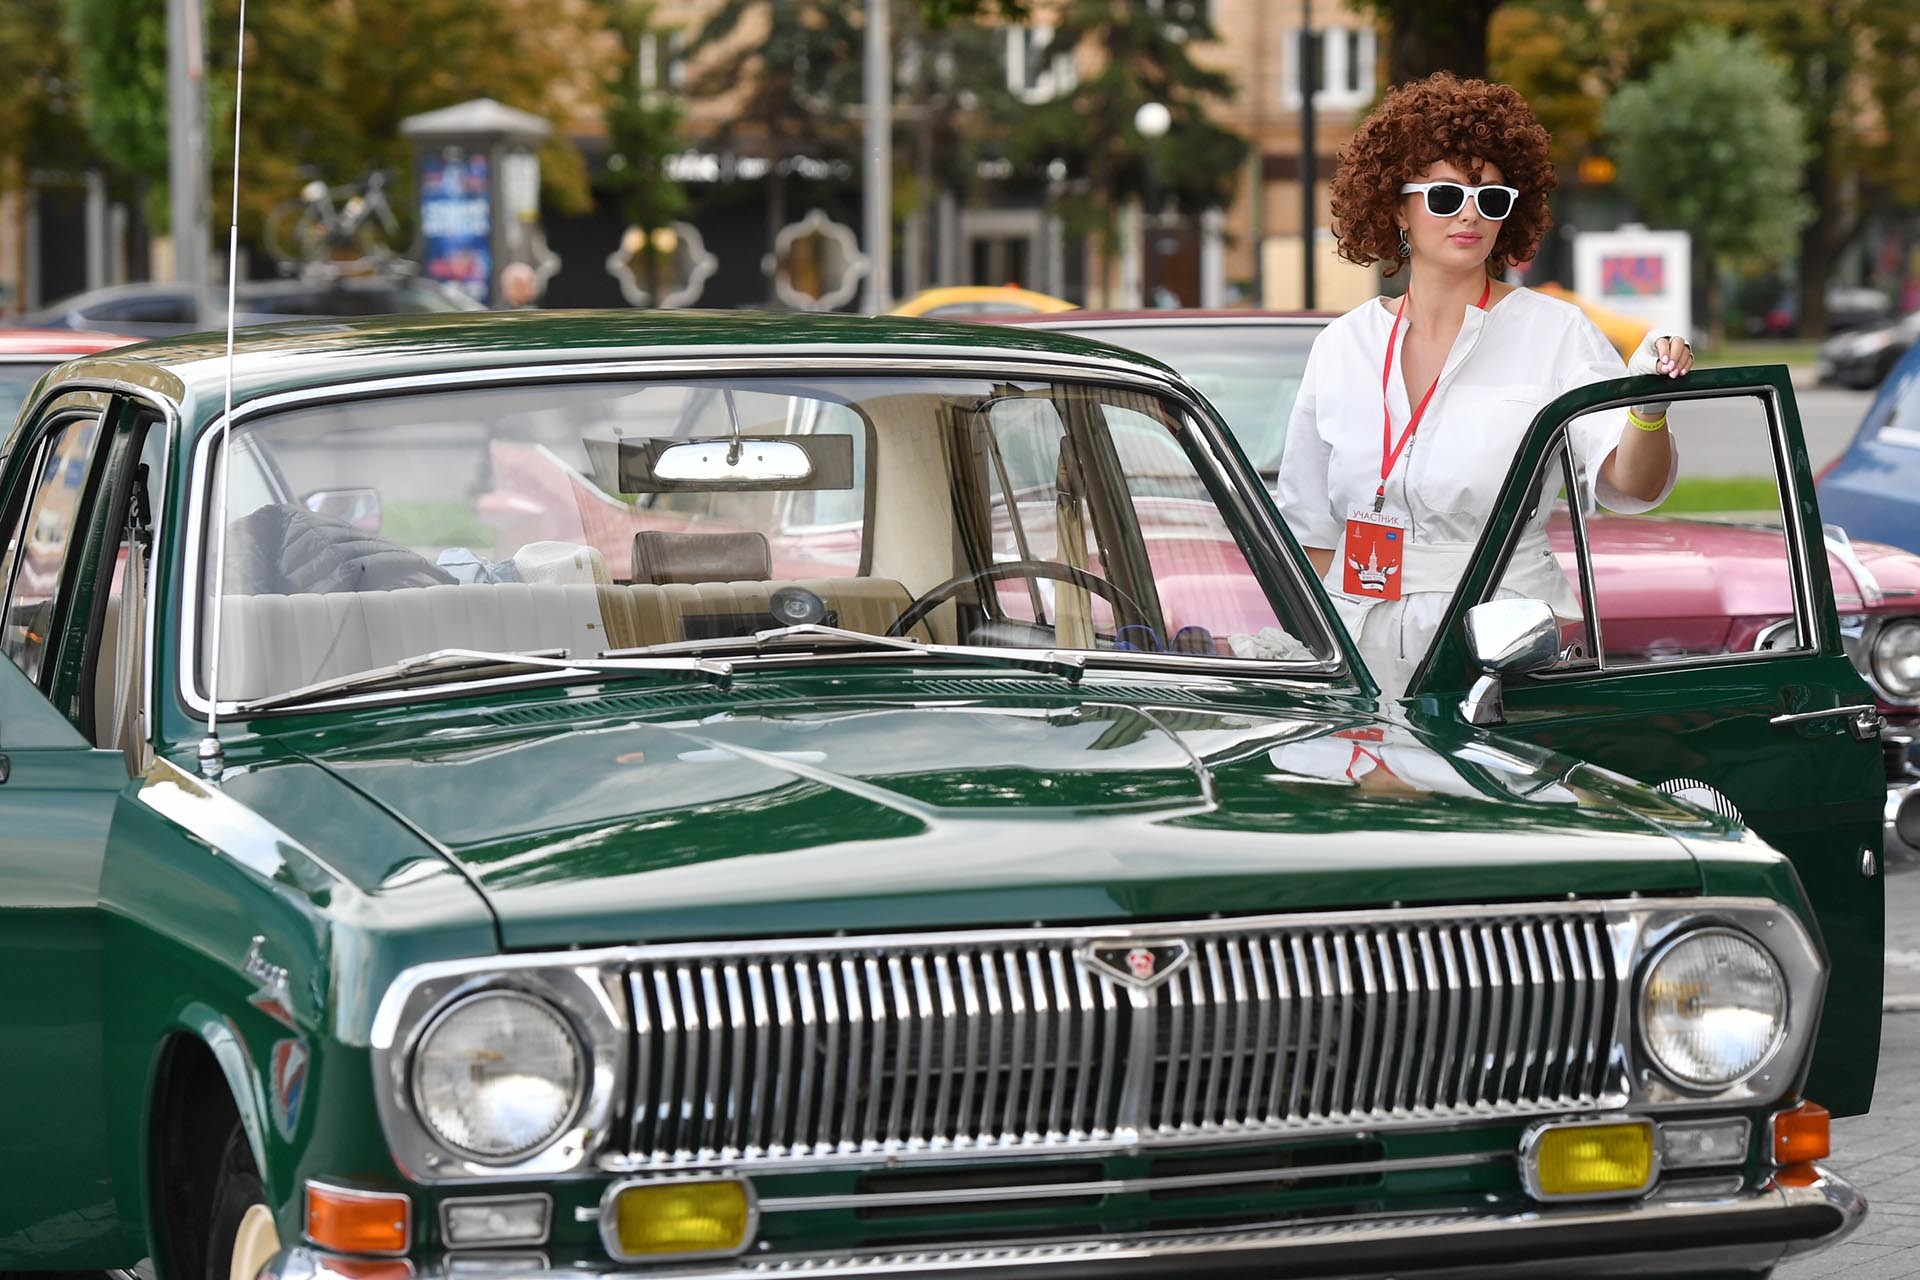 Ремонт и восстановление кожаных сидений автомобиля - цена от руб в Москве